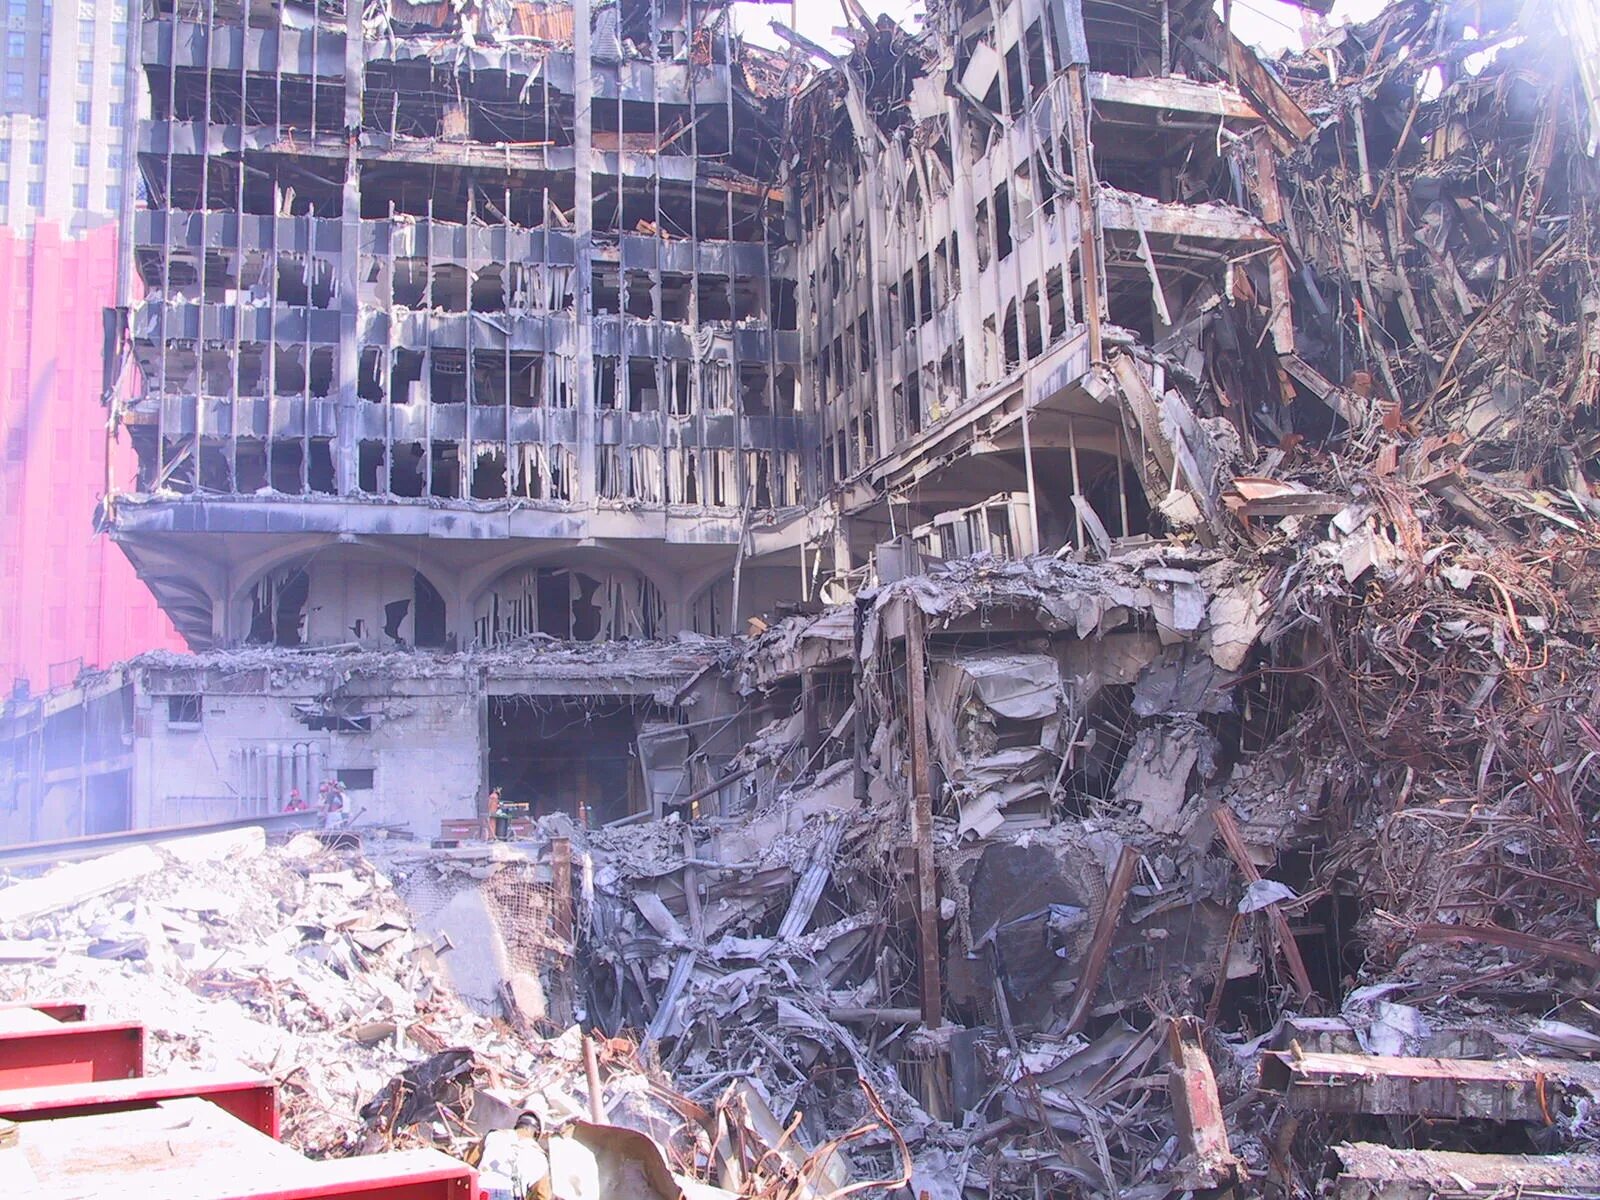 Теракт 11 сентября в Нью Йорке. Взрыв башен-близнецов в Нью-Йорке. Трагедия 11 сентября 2001 в США. Сколько умерло людей во время теракта